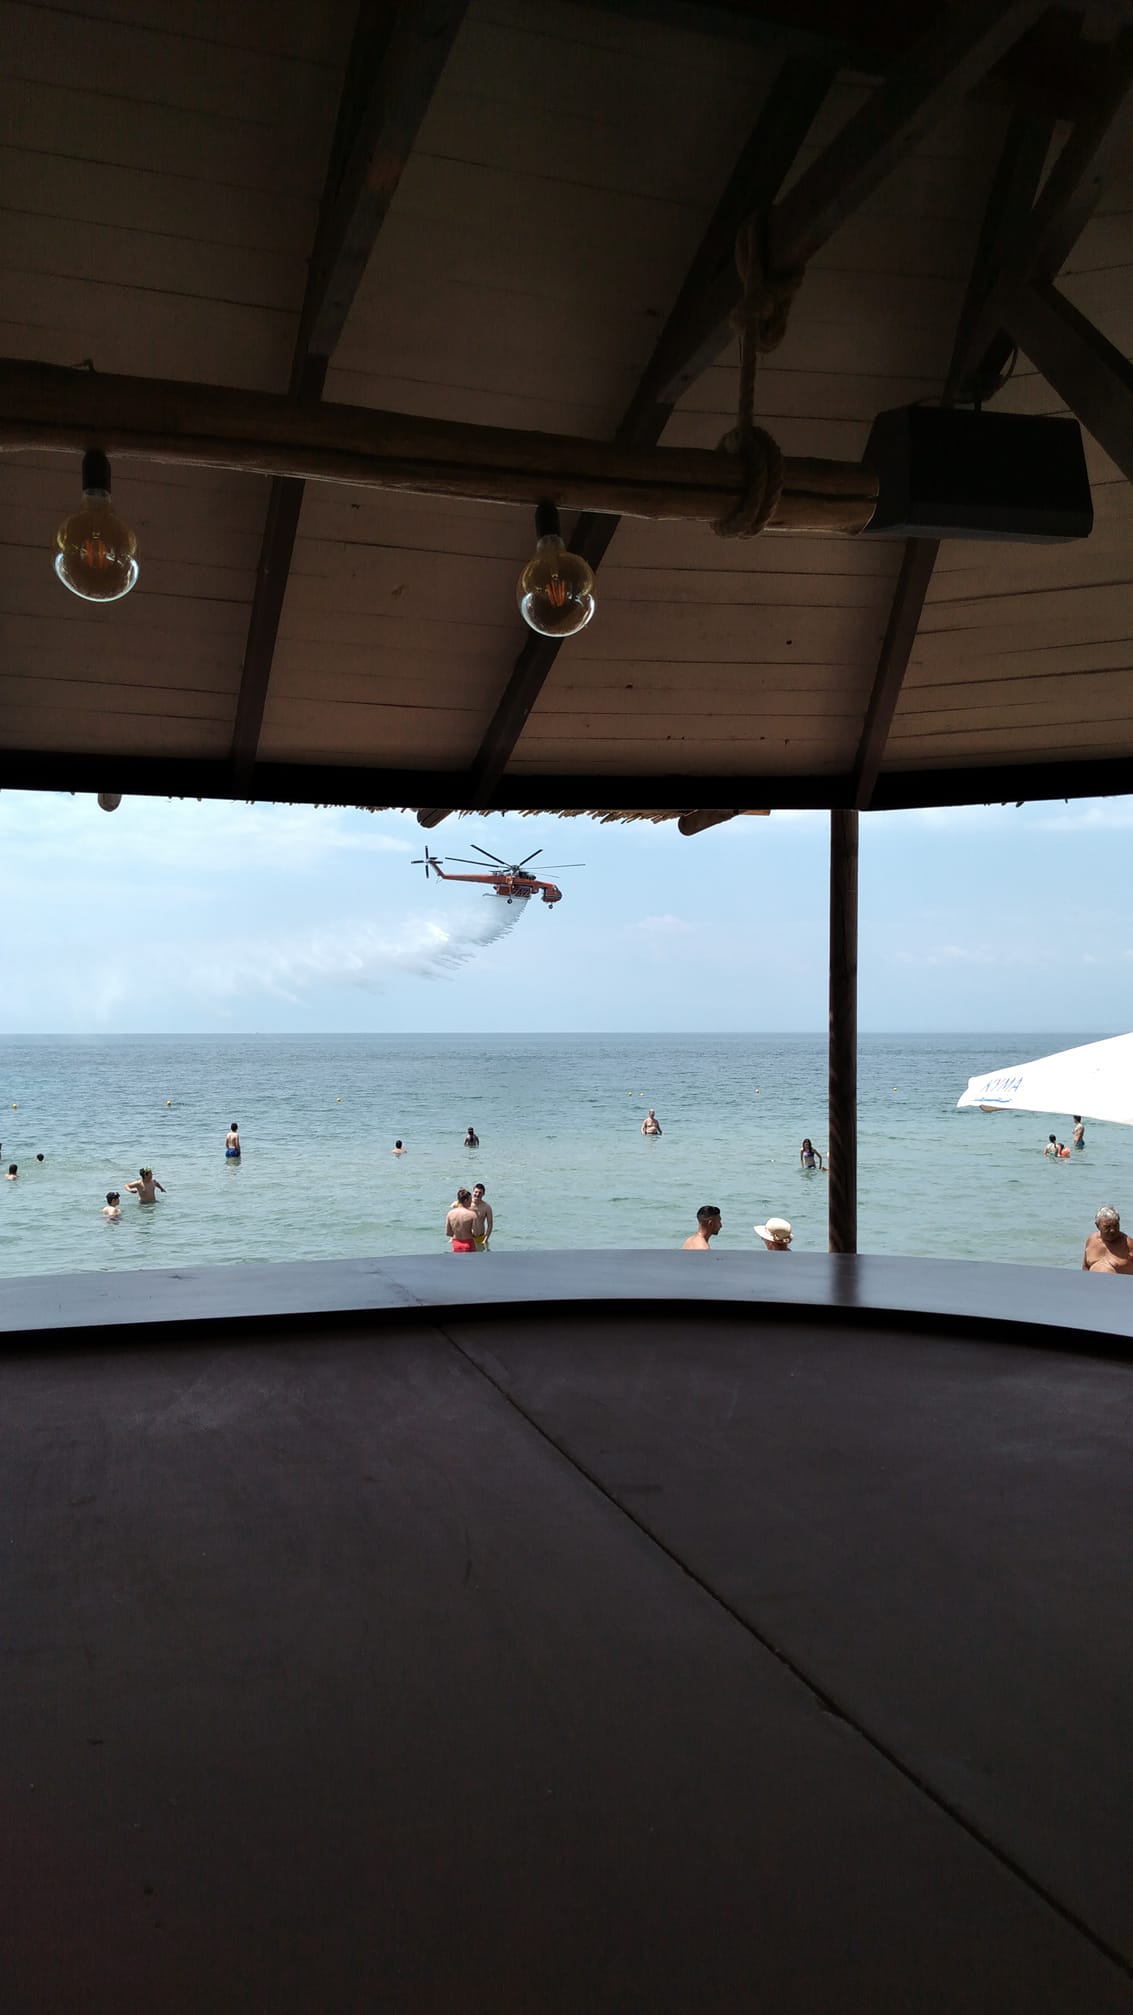 Δοκιμές πυροσβεστικού ελικοπτέρου “αναστάτωσαν” την Παραλία Επανομής (ΒΙΝΤΕΟ)